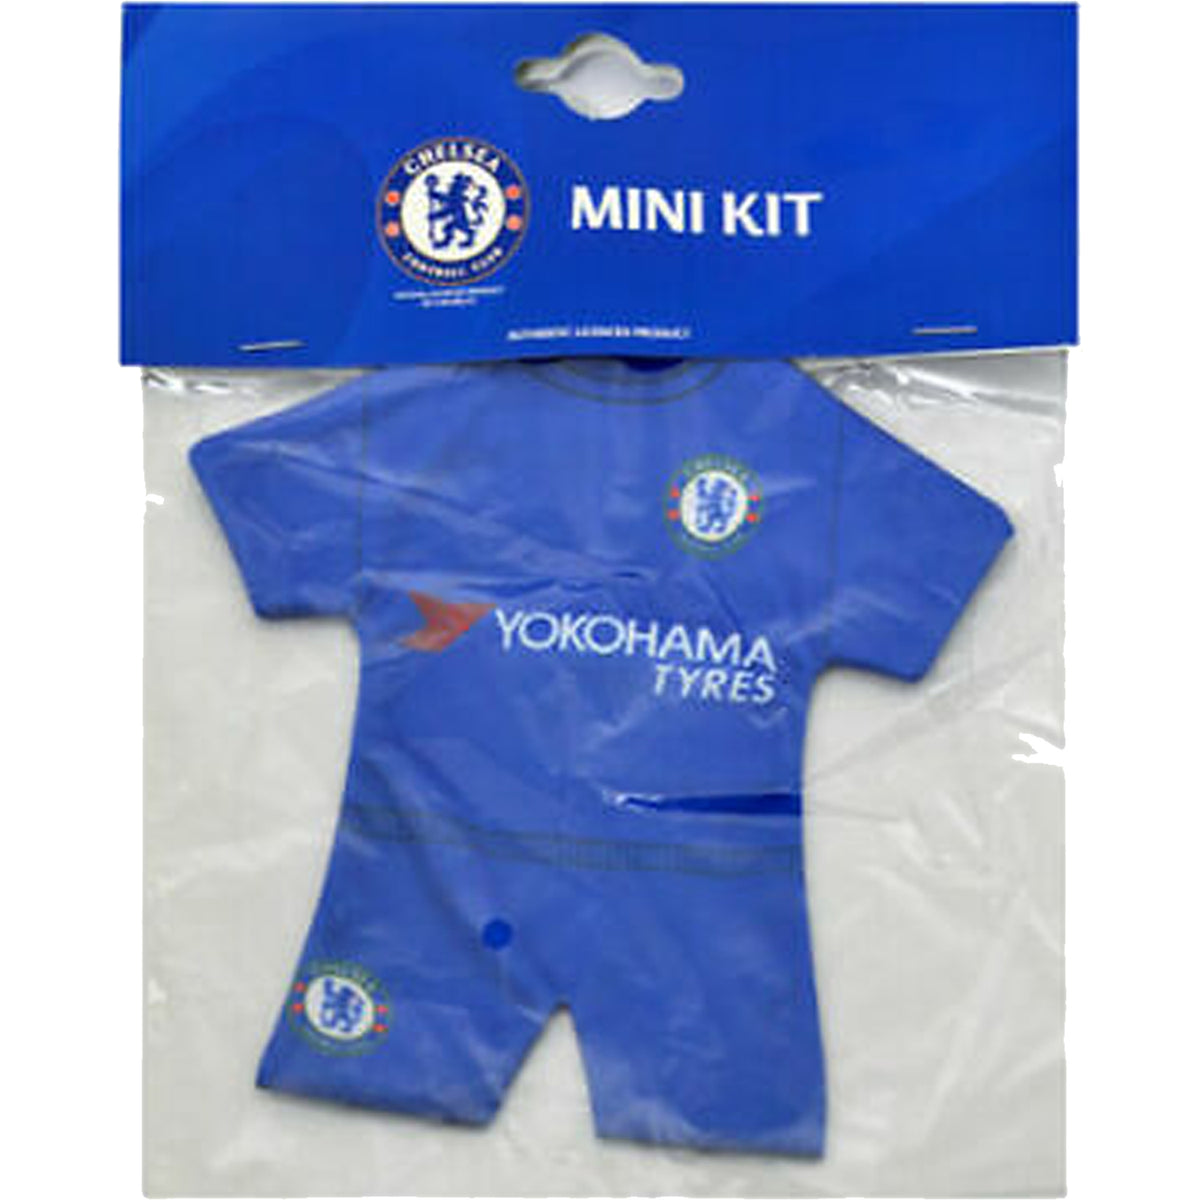 Chelsea FC Mini Kit Car Hanger